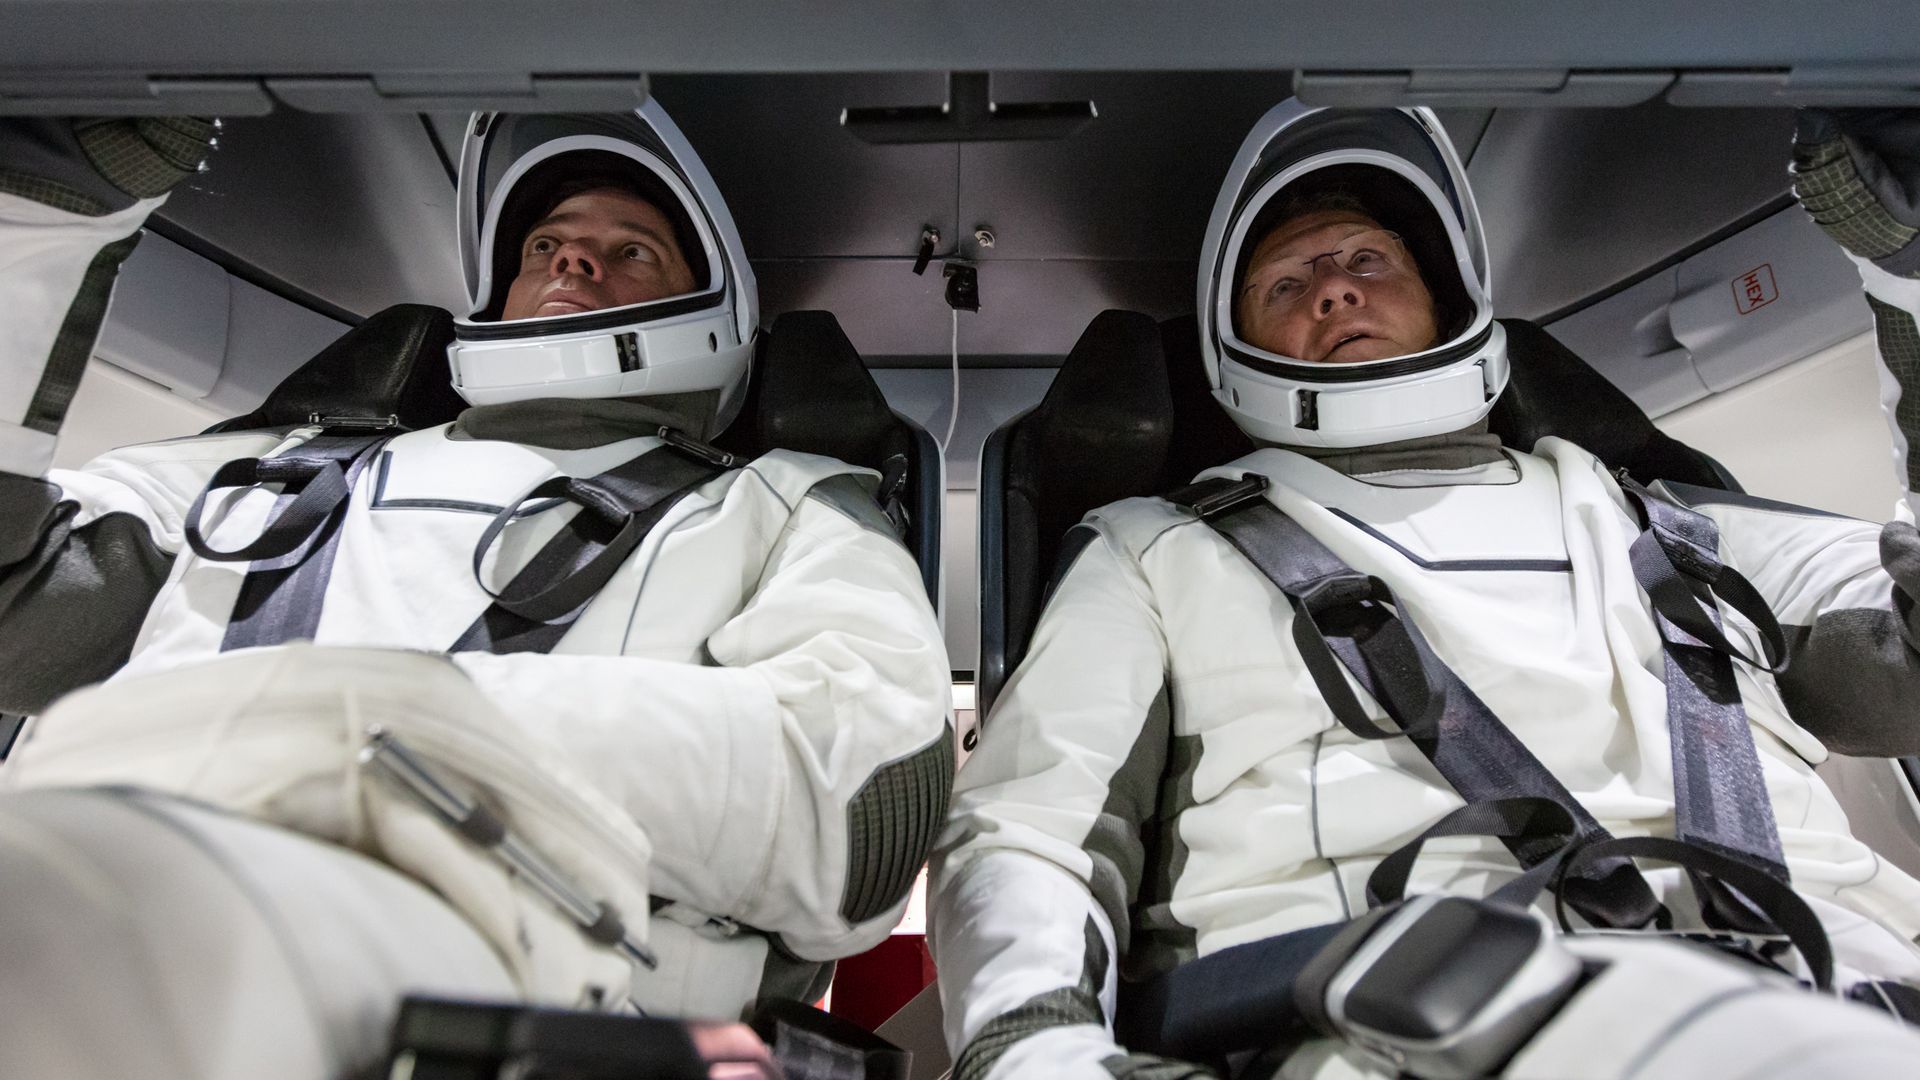 NASA astronauts Doug Hurley and Bob Behnken in SpaceX's Crew Dragon